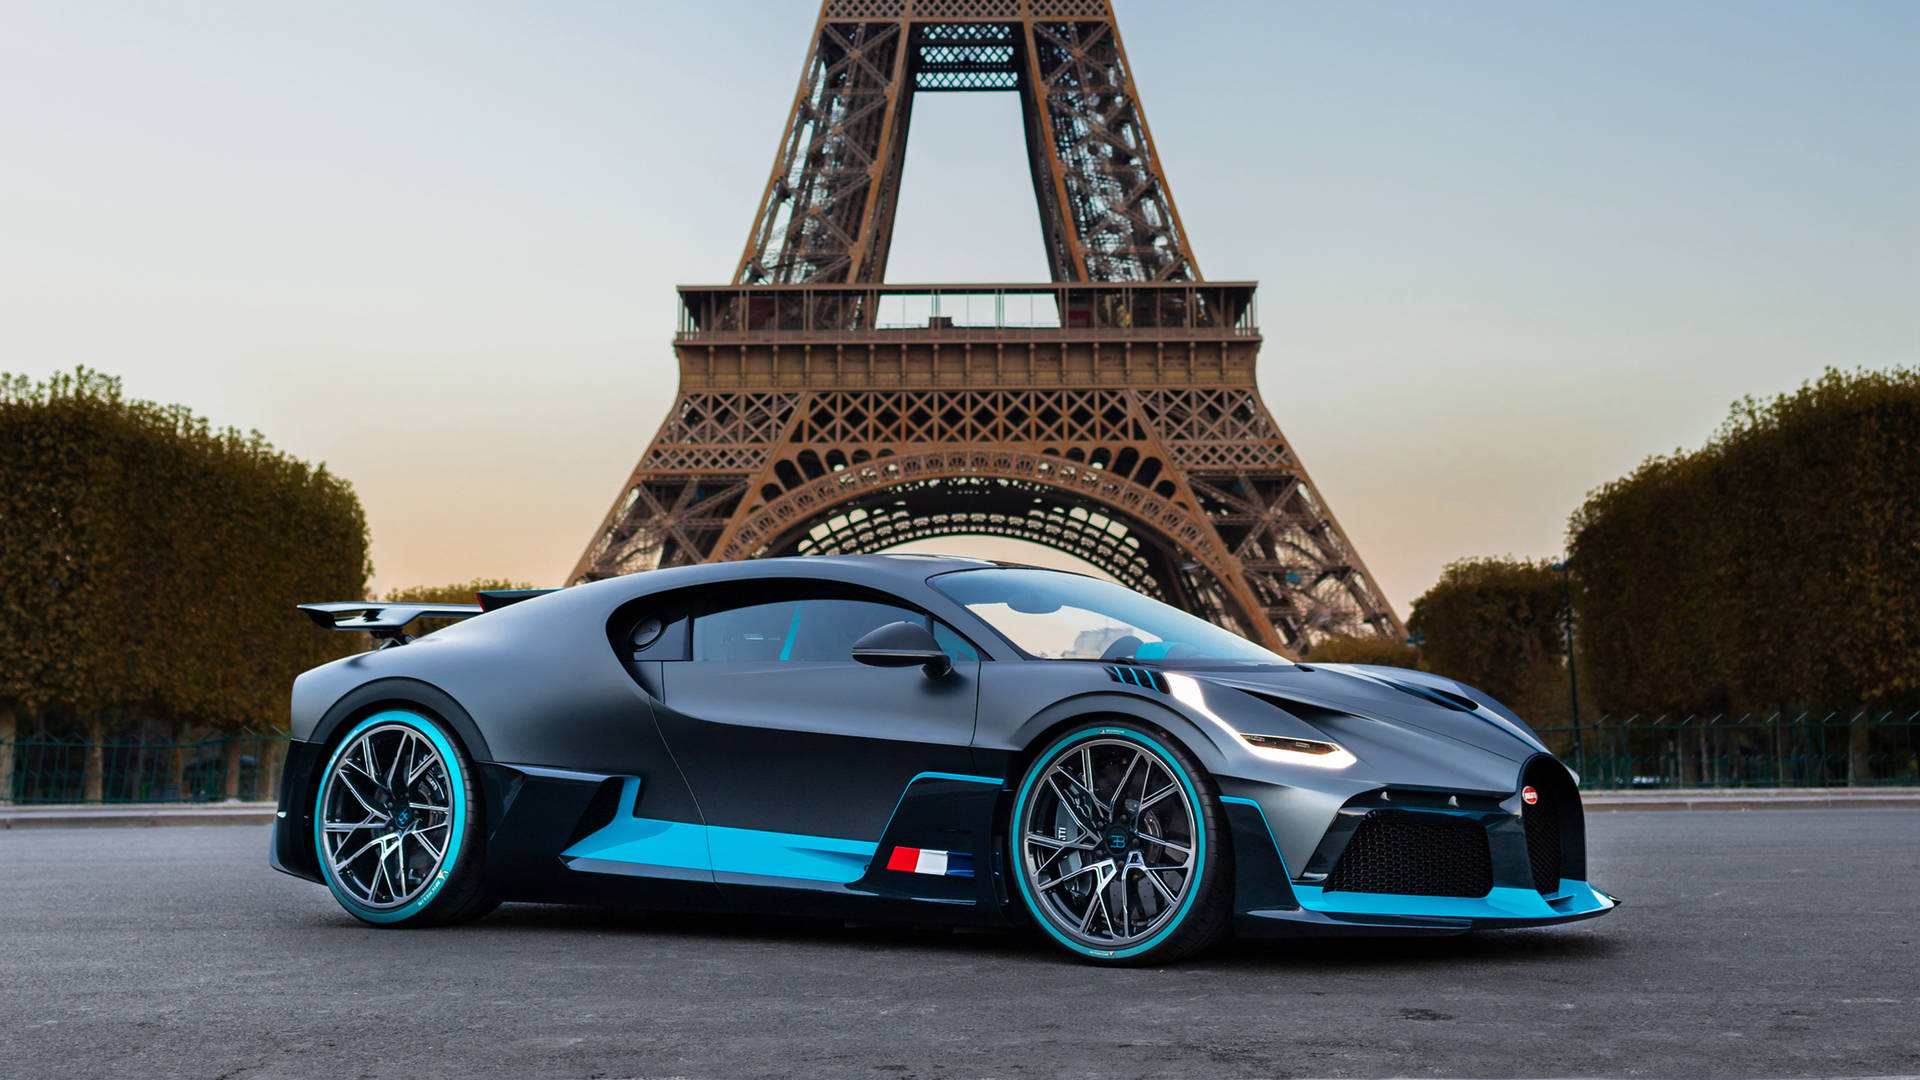 Cool Bugatti Car In Paris